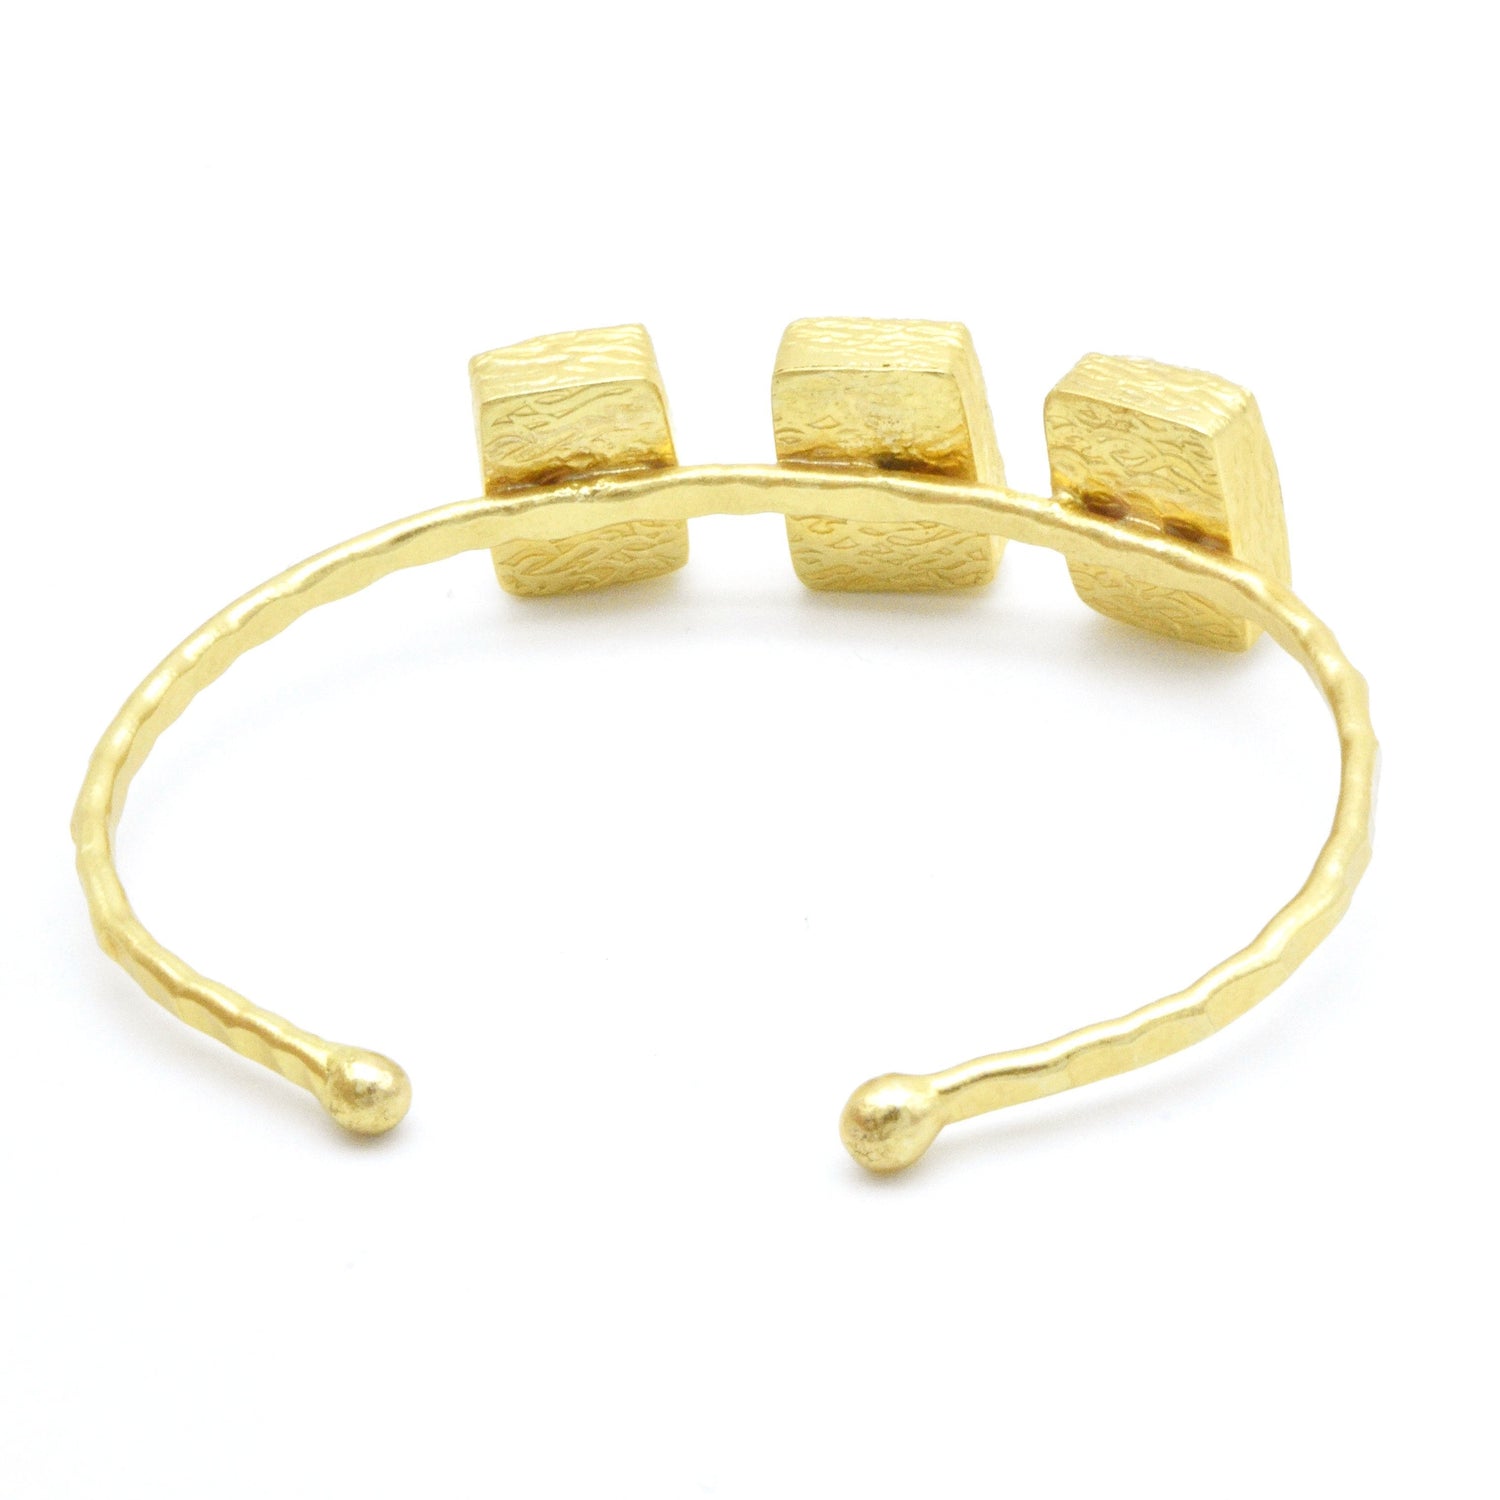 Aylas Aqua Marine cuff/bracelet - Gold plated semi precious gemstone - Handmade in Ottoman Style